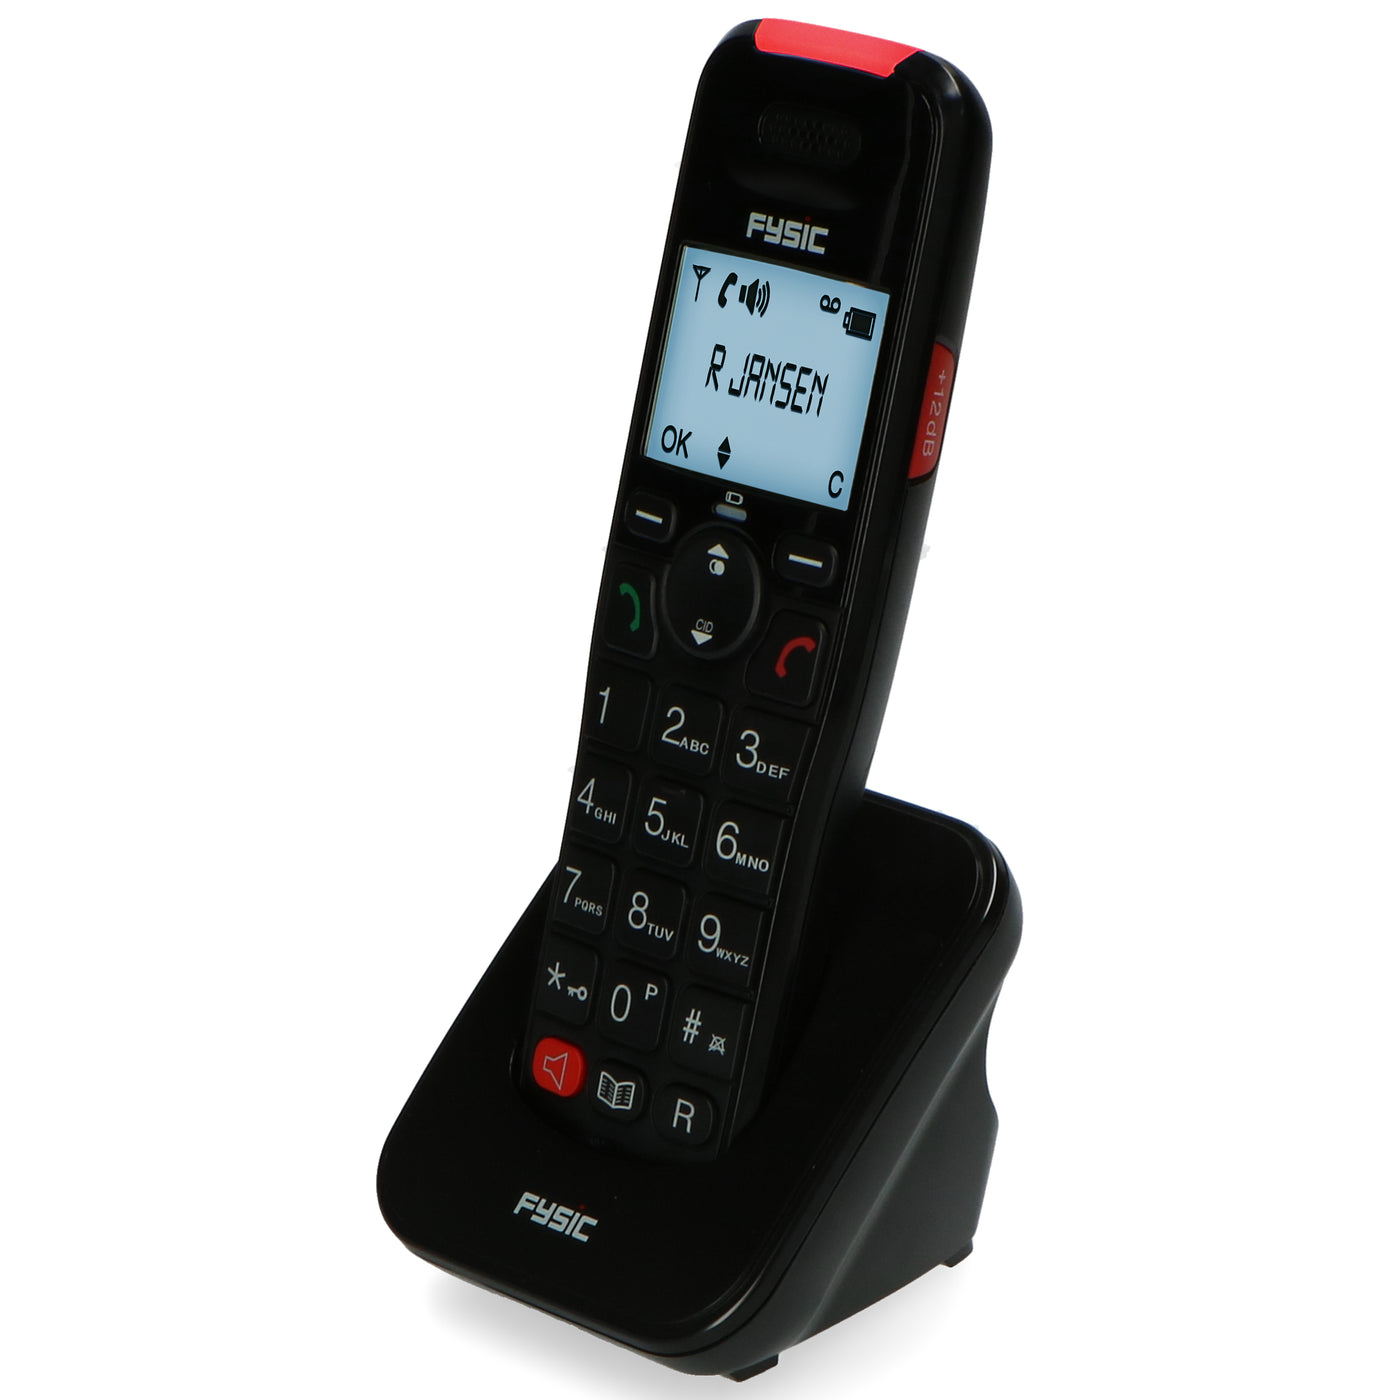 Fysic FX-8025 - Vaste telefoon met antwoordapparaat en DECT telefoon voor senioren, zwart